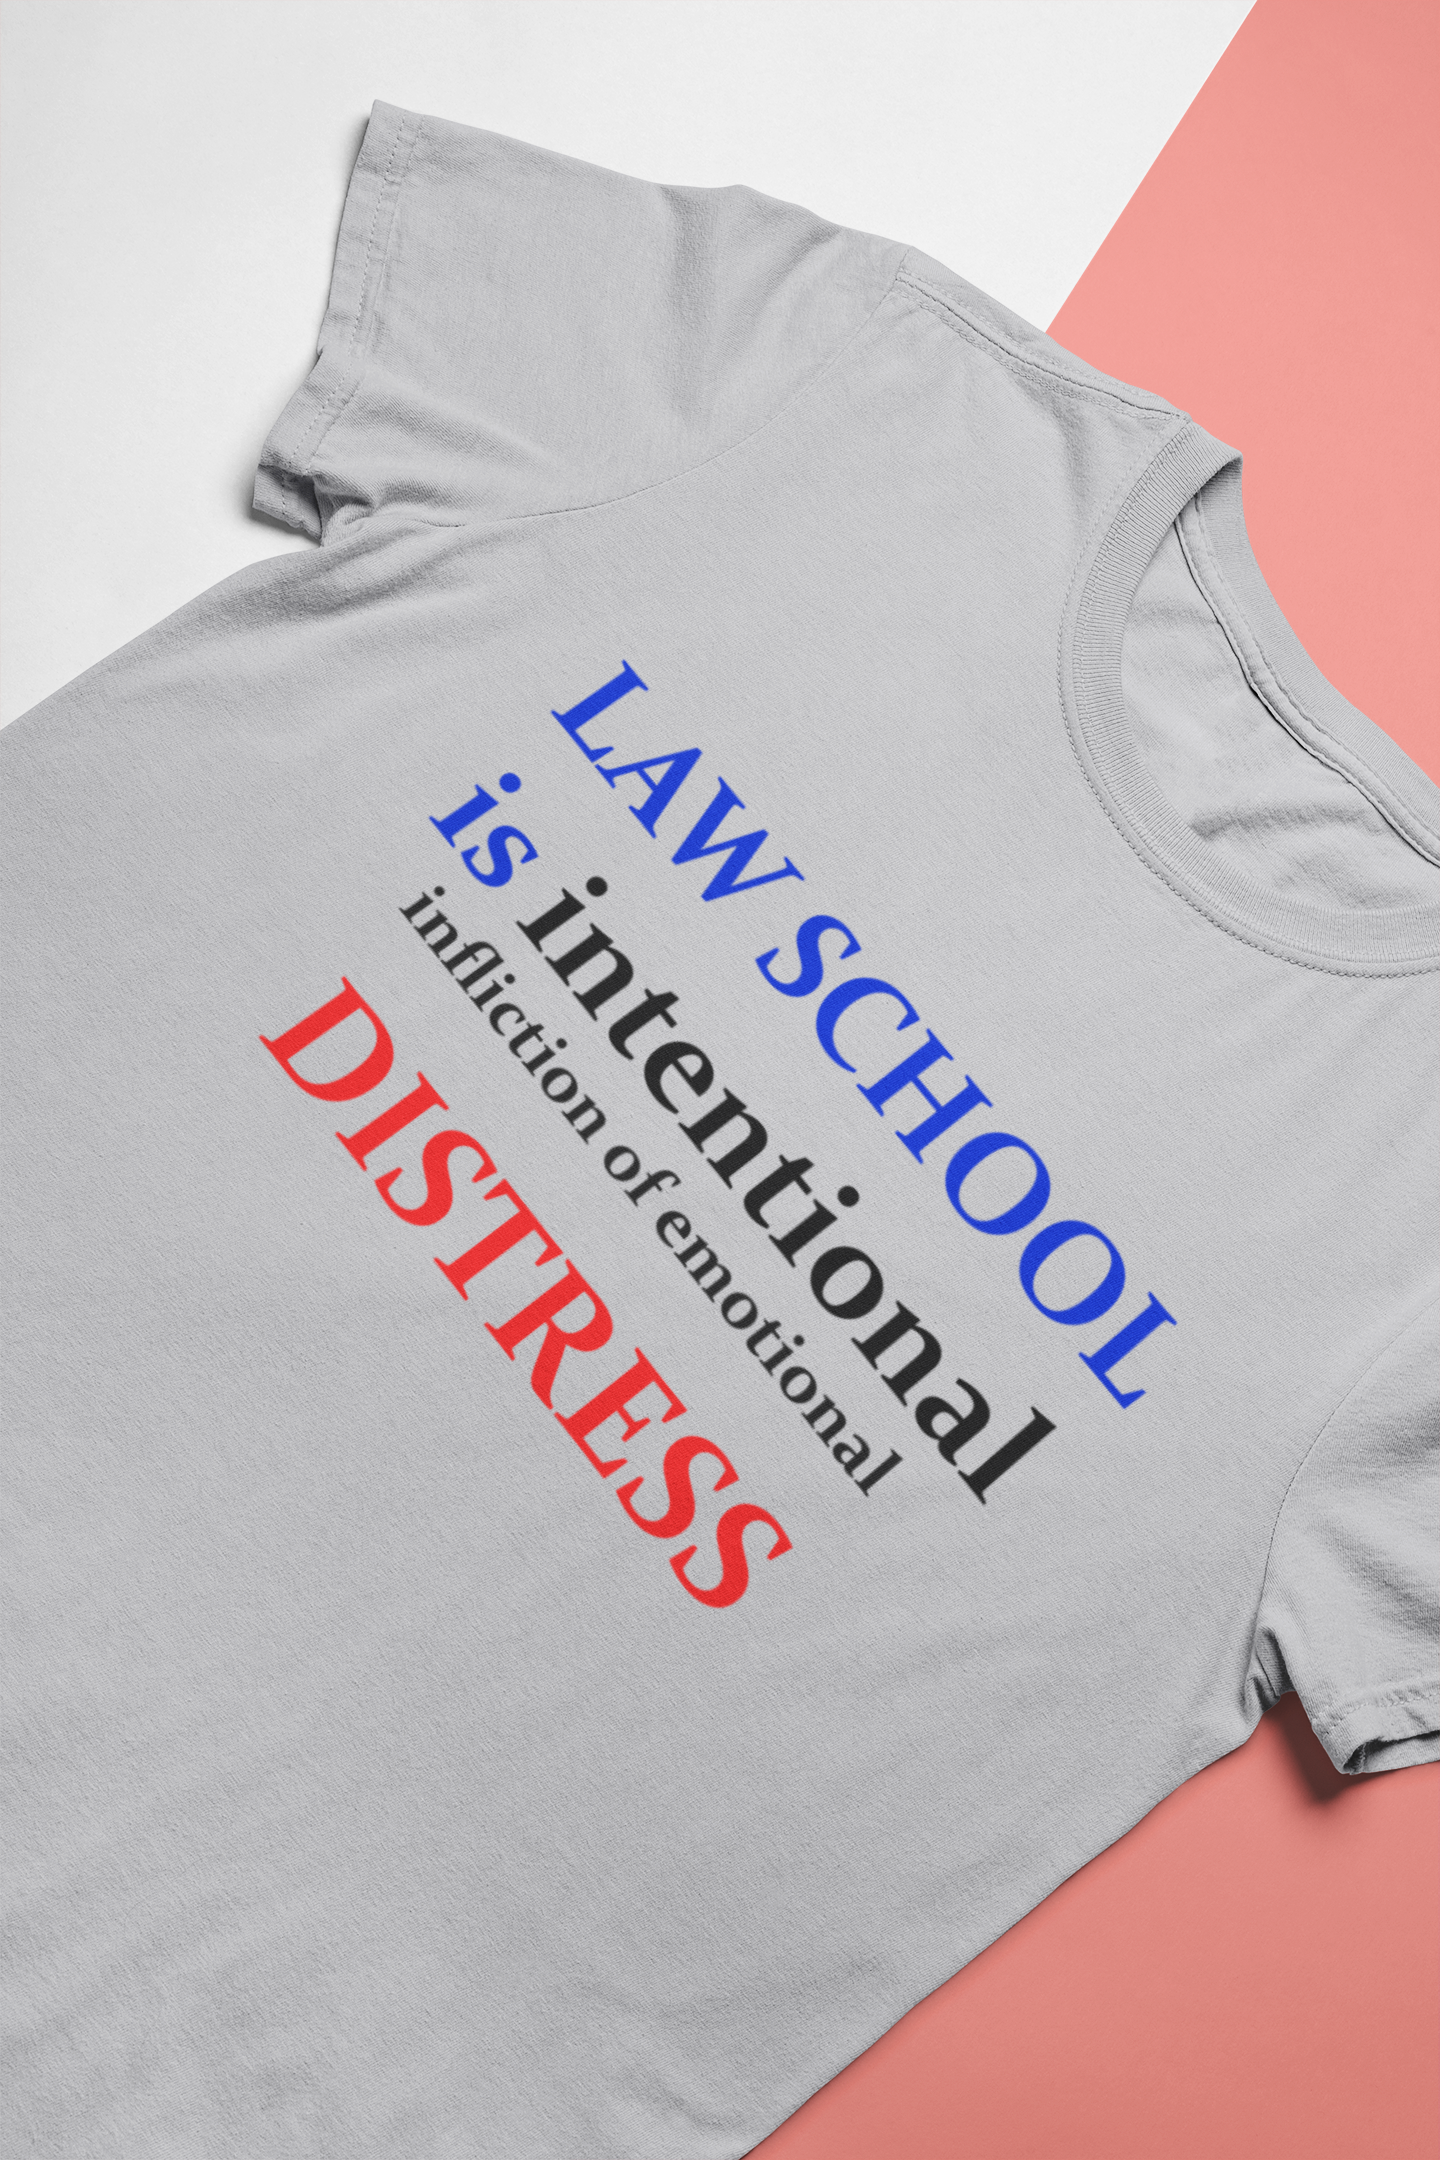 Law School Is International Distress Lawyer Women Half Sleeves T-shirt- FunkyTeesClub